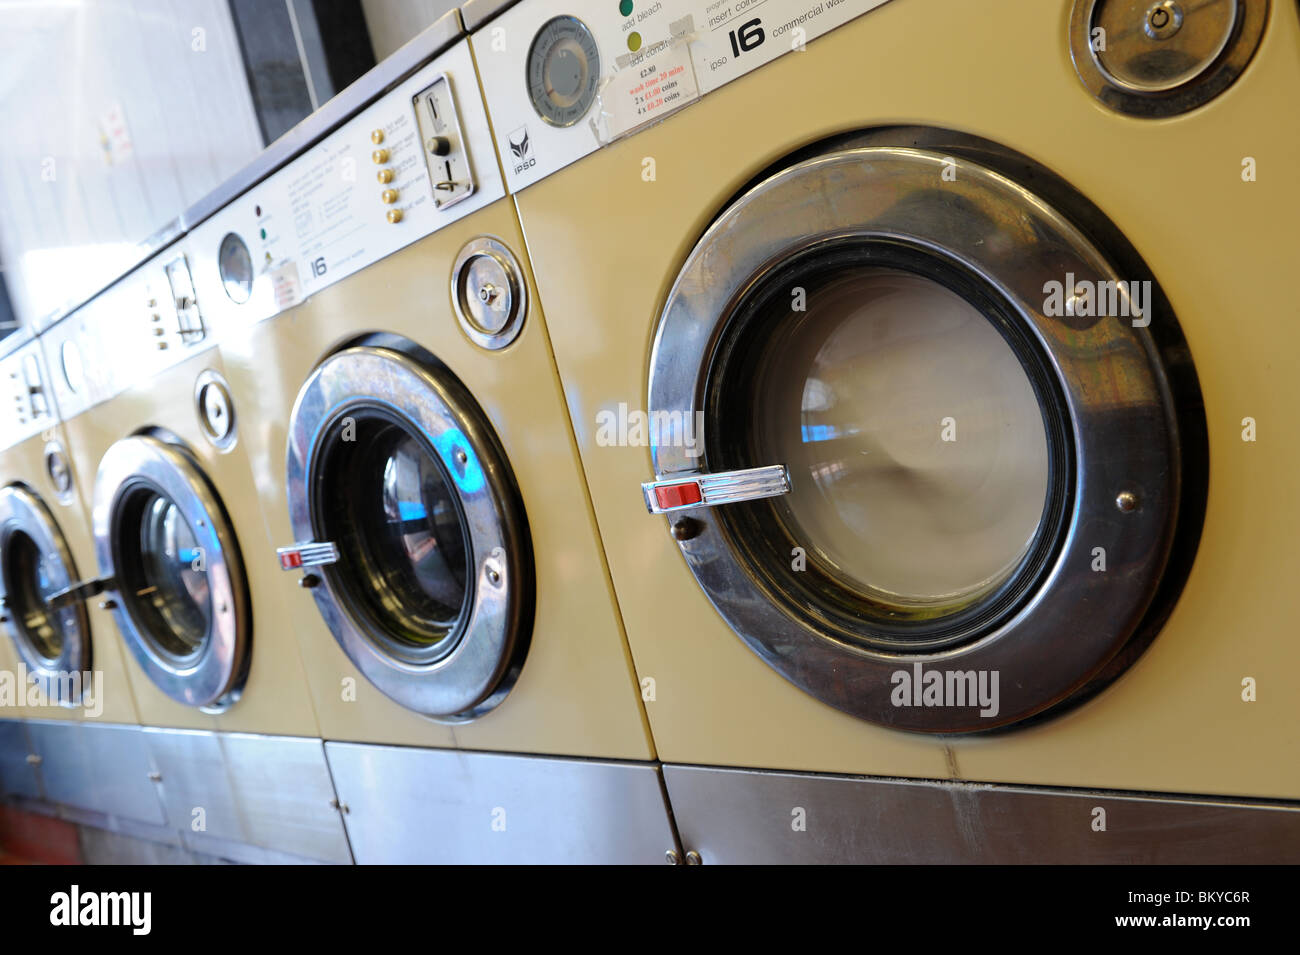 Waschmaschine im Waschsalon England Uk Stockfoto